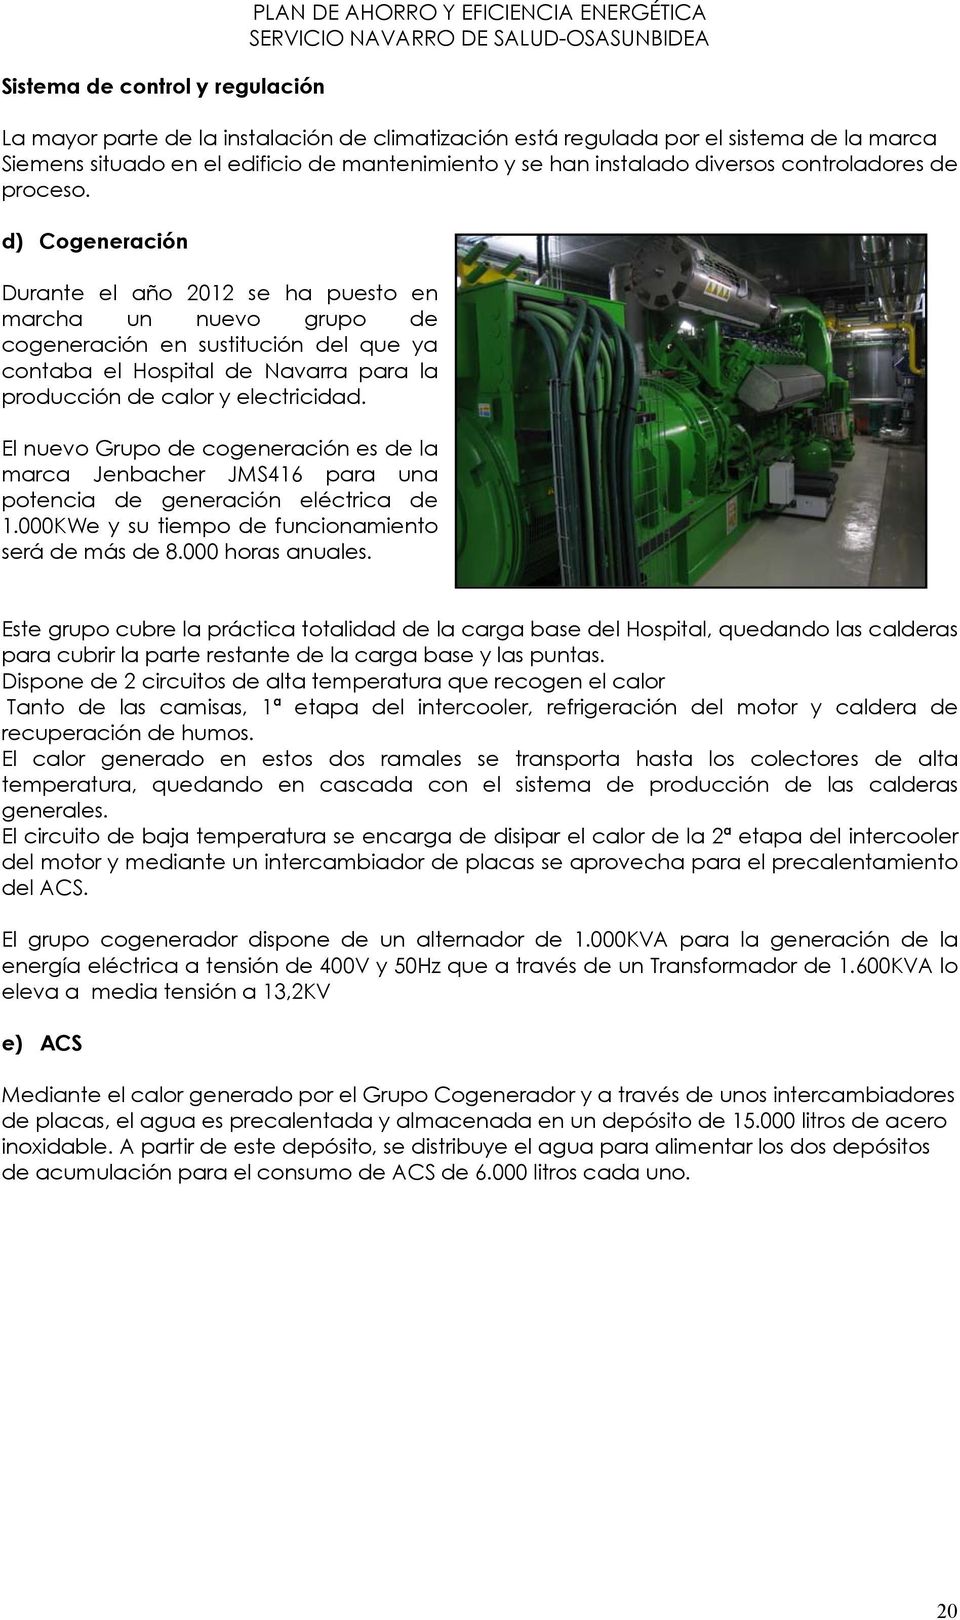 d) Cogeneración Durante el año 2012 se ha puesto en marcha un nuevo grupo de cogeneración en sustitución del que ya contaba el Hospital de Navarra para la producción de calor y electricidad.